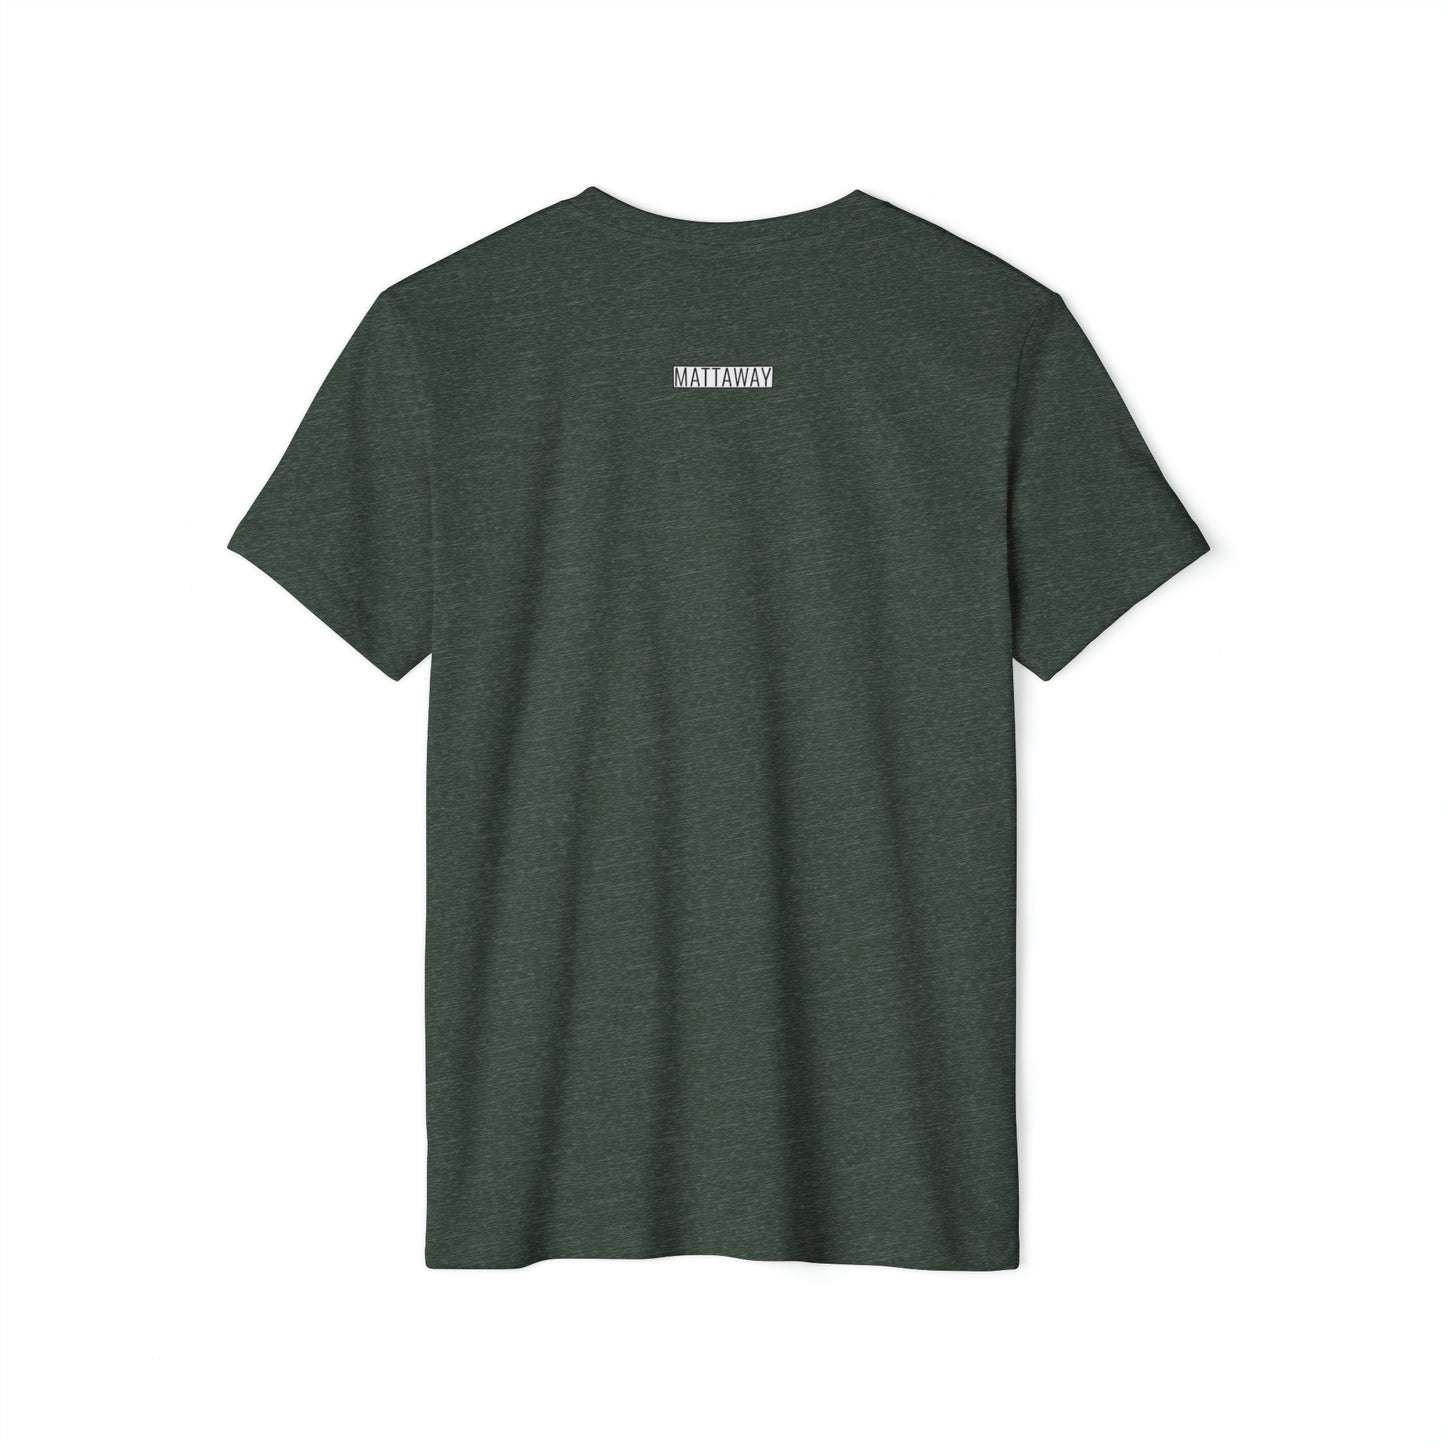 MINIMAL SHAPES 102 - Camiseta ecológica reciclada unisex